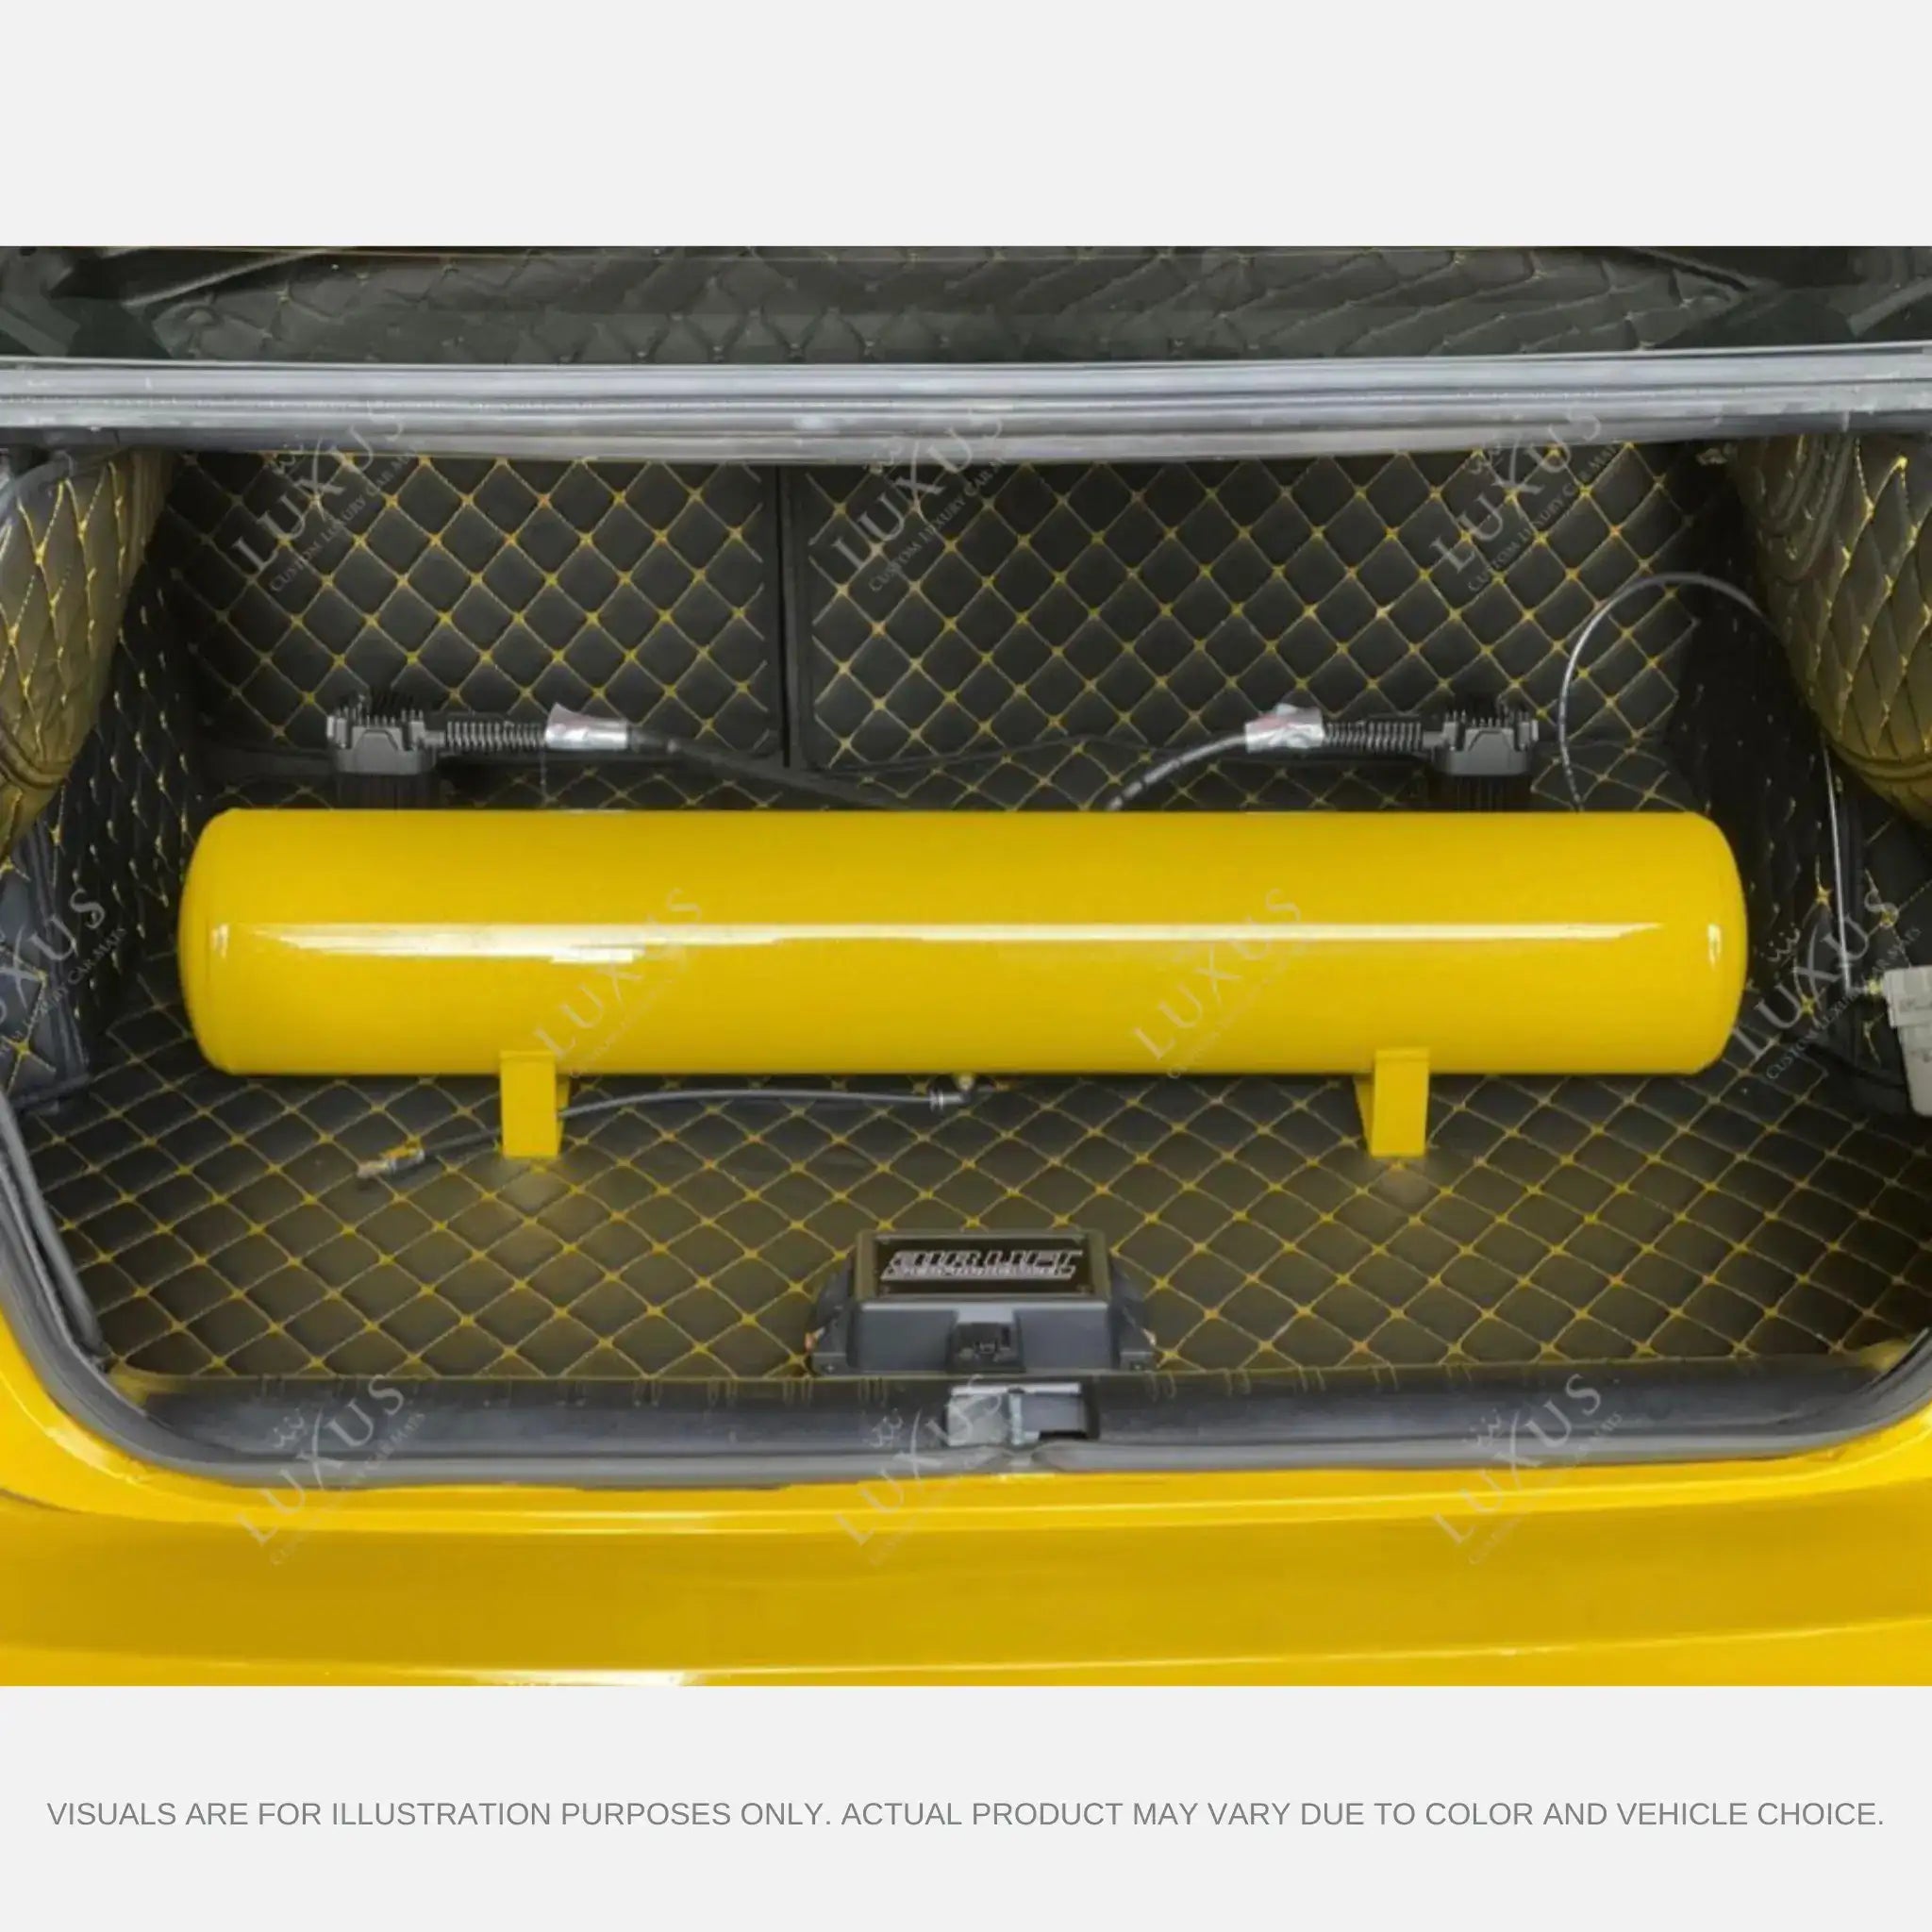 Luxus Car Mats™ - Tapete para maletero/maletero de cuero de lujo con costuras en 3D en negro y azul